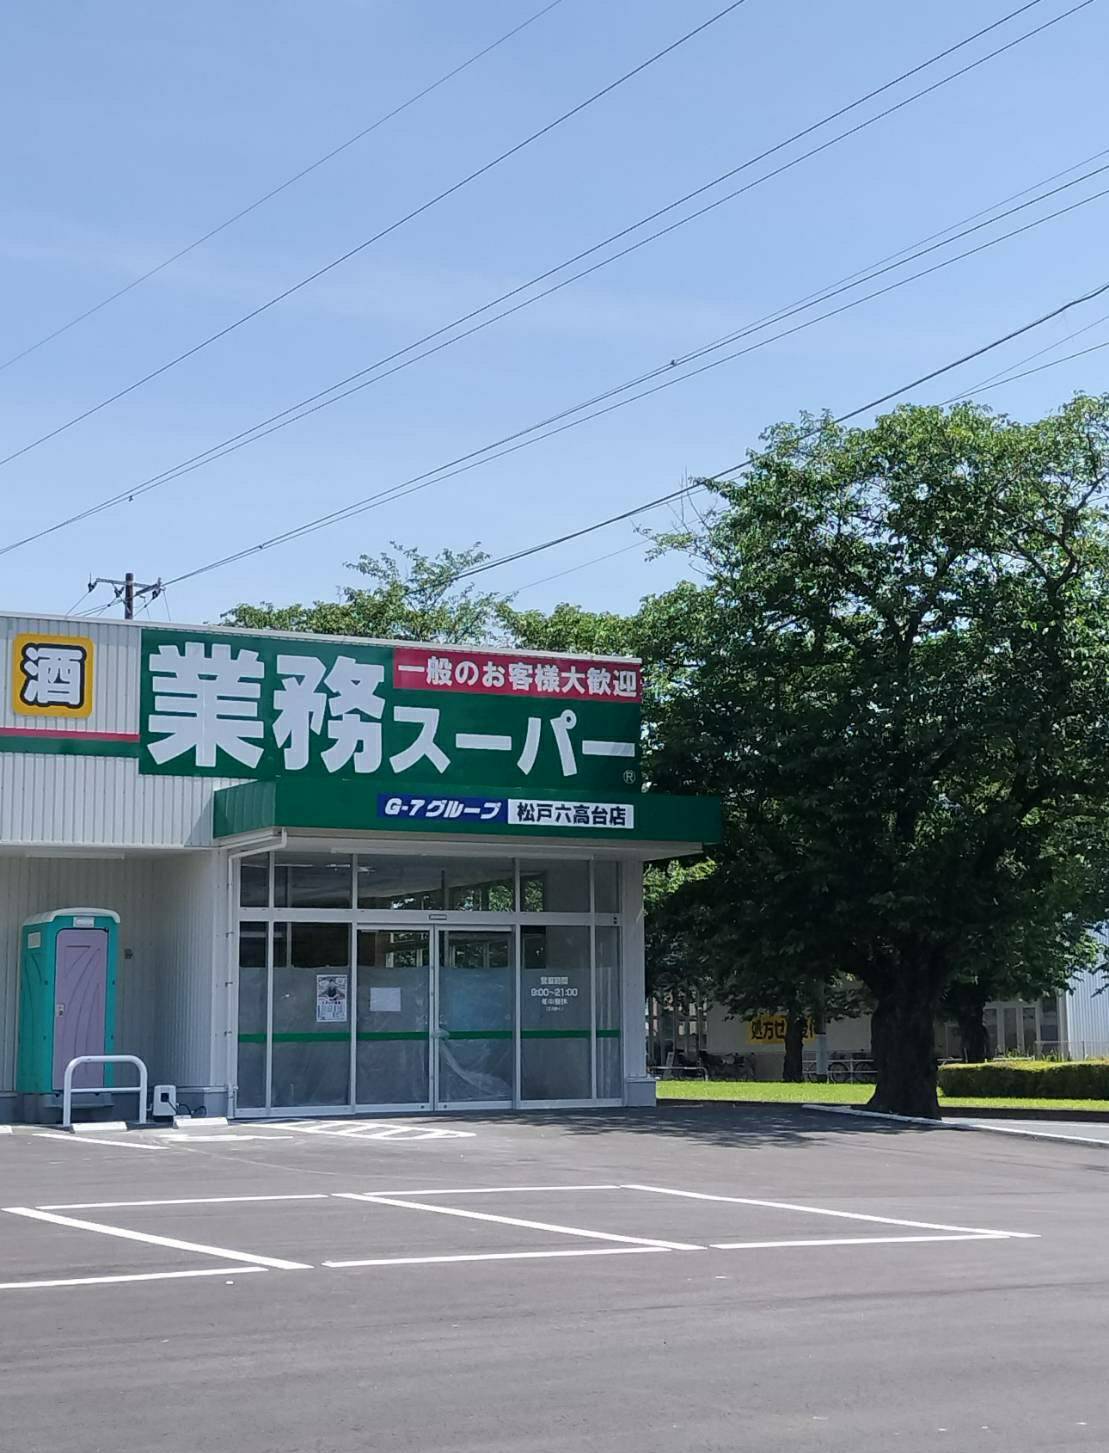 業務スーパー松戸六高台店6月15日9時オープン六実さくら通り沿い